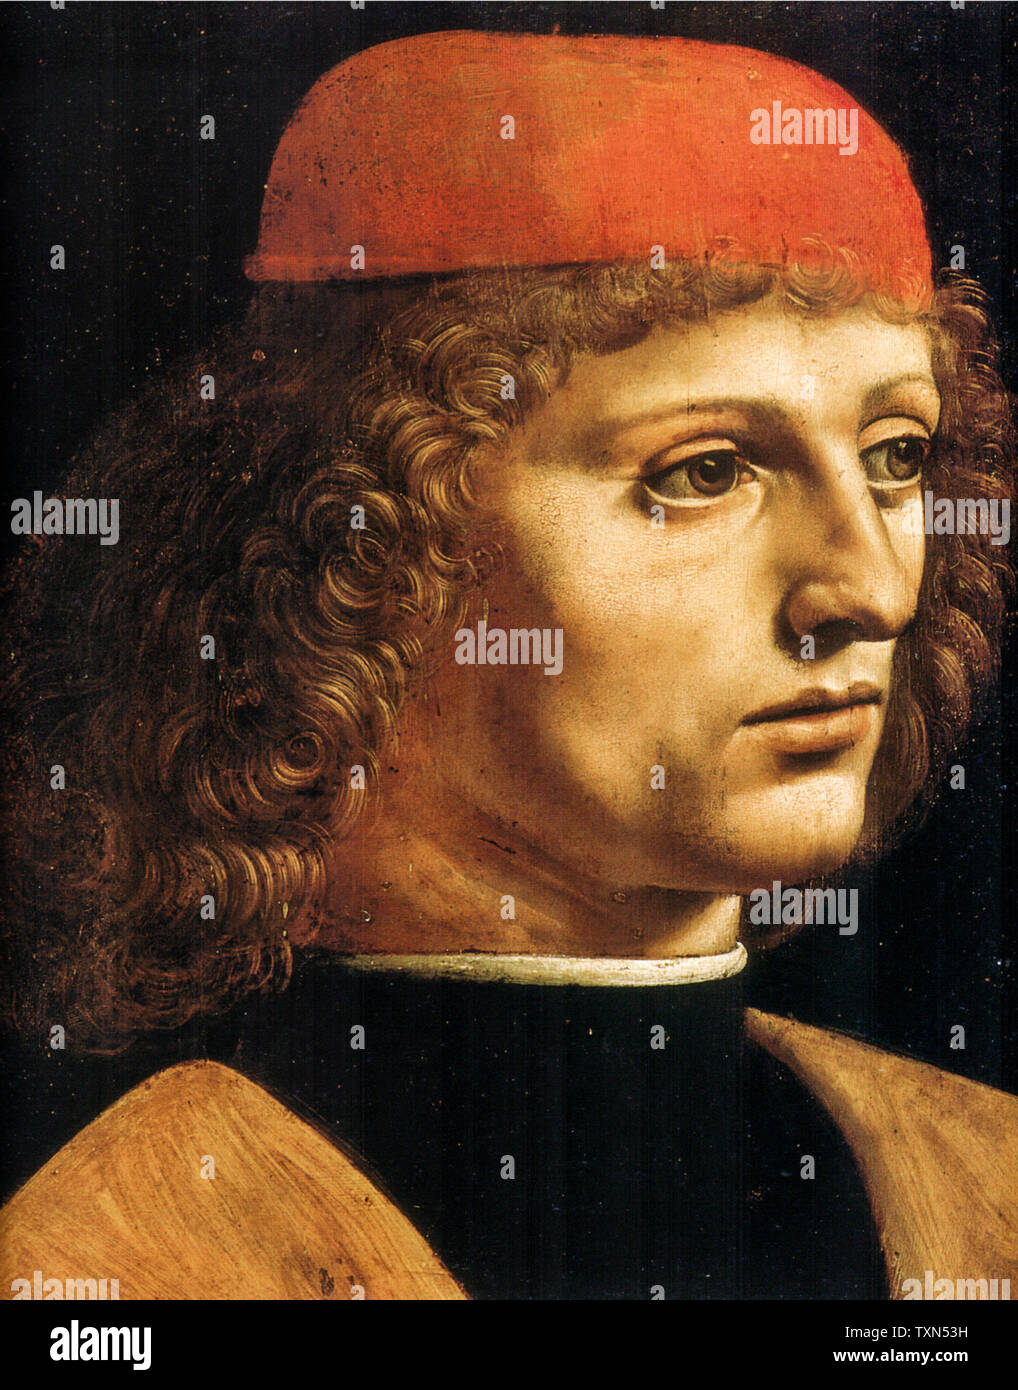 Leonardo Da Vinci, Portrait of a Musician (detail), portrait painting ...